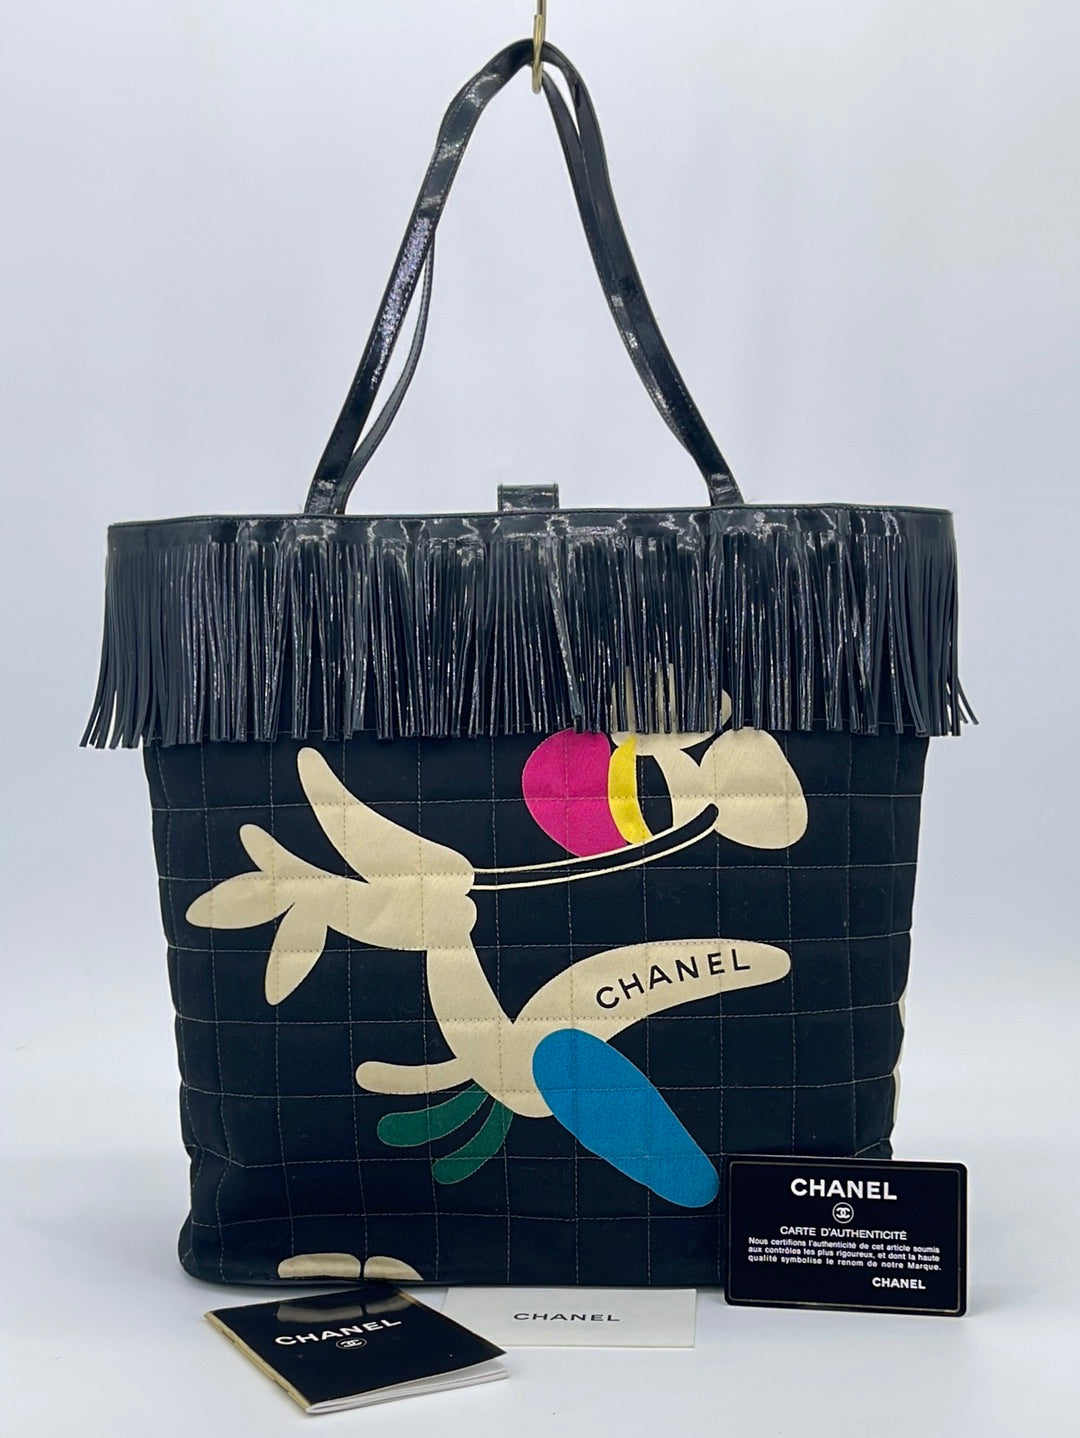 Preloved Chanel Chocolate Bar Fringe Shoulder Bag 5960004 040523. Off